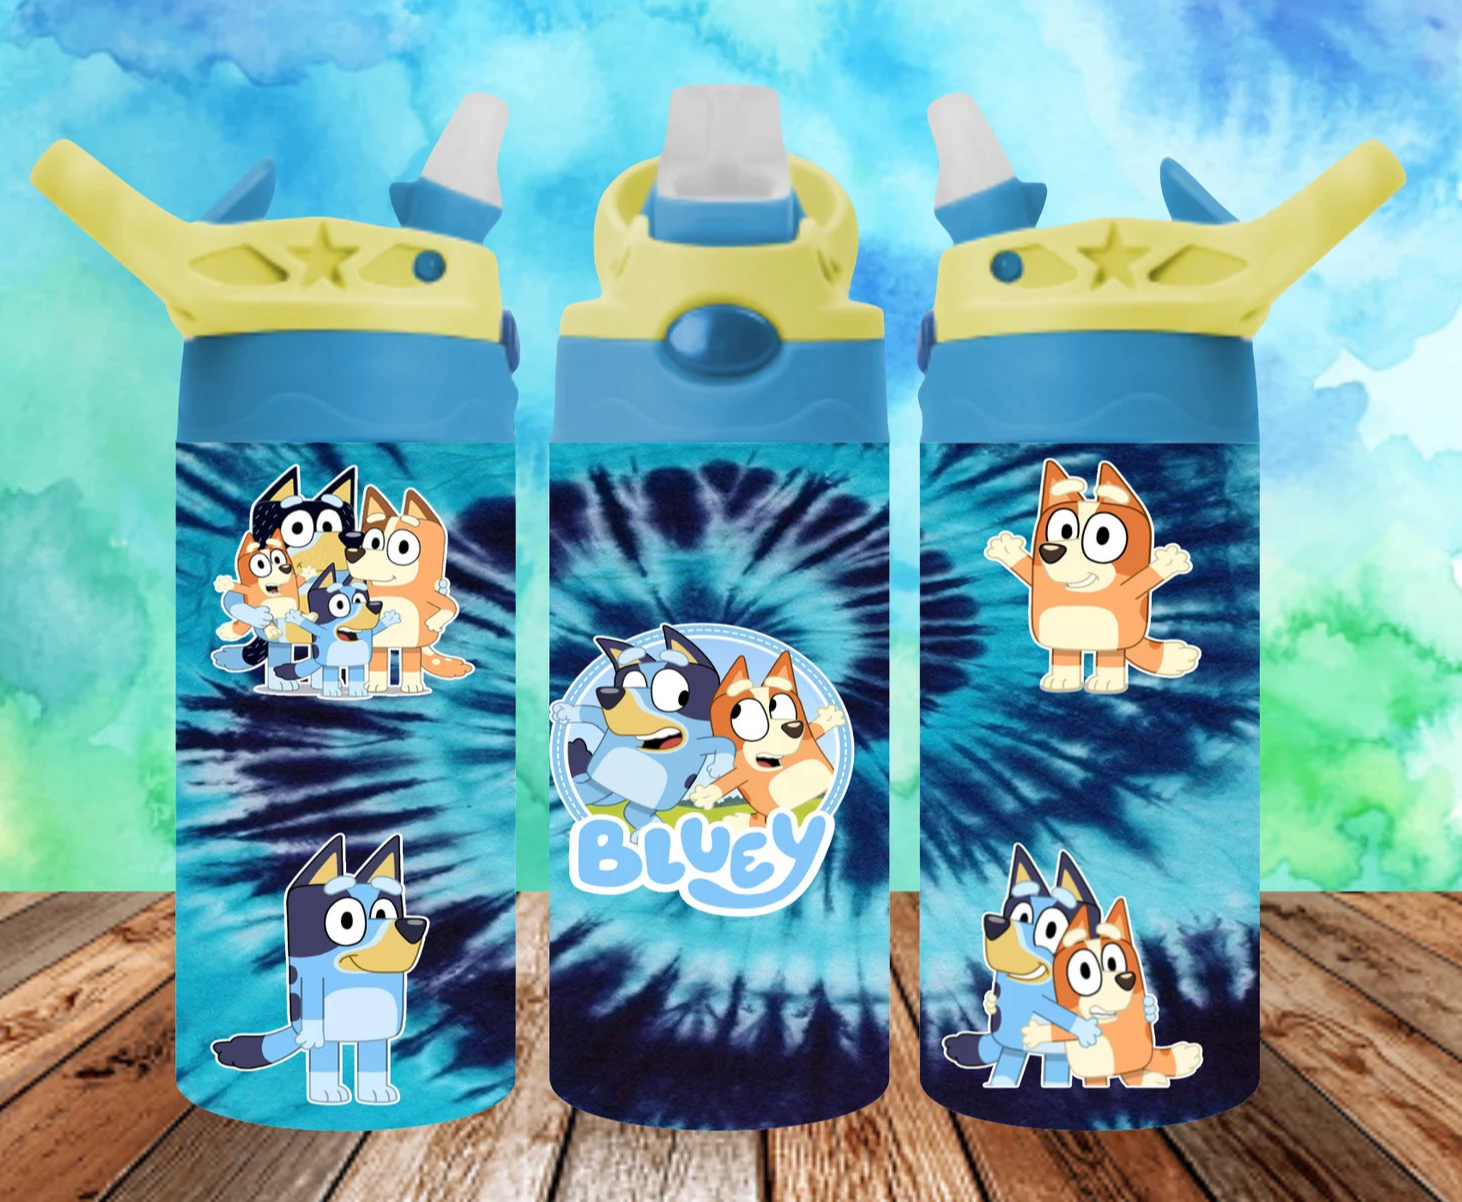 Bluey 12 oz water bottle – BSY Designs